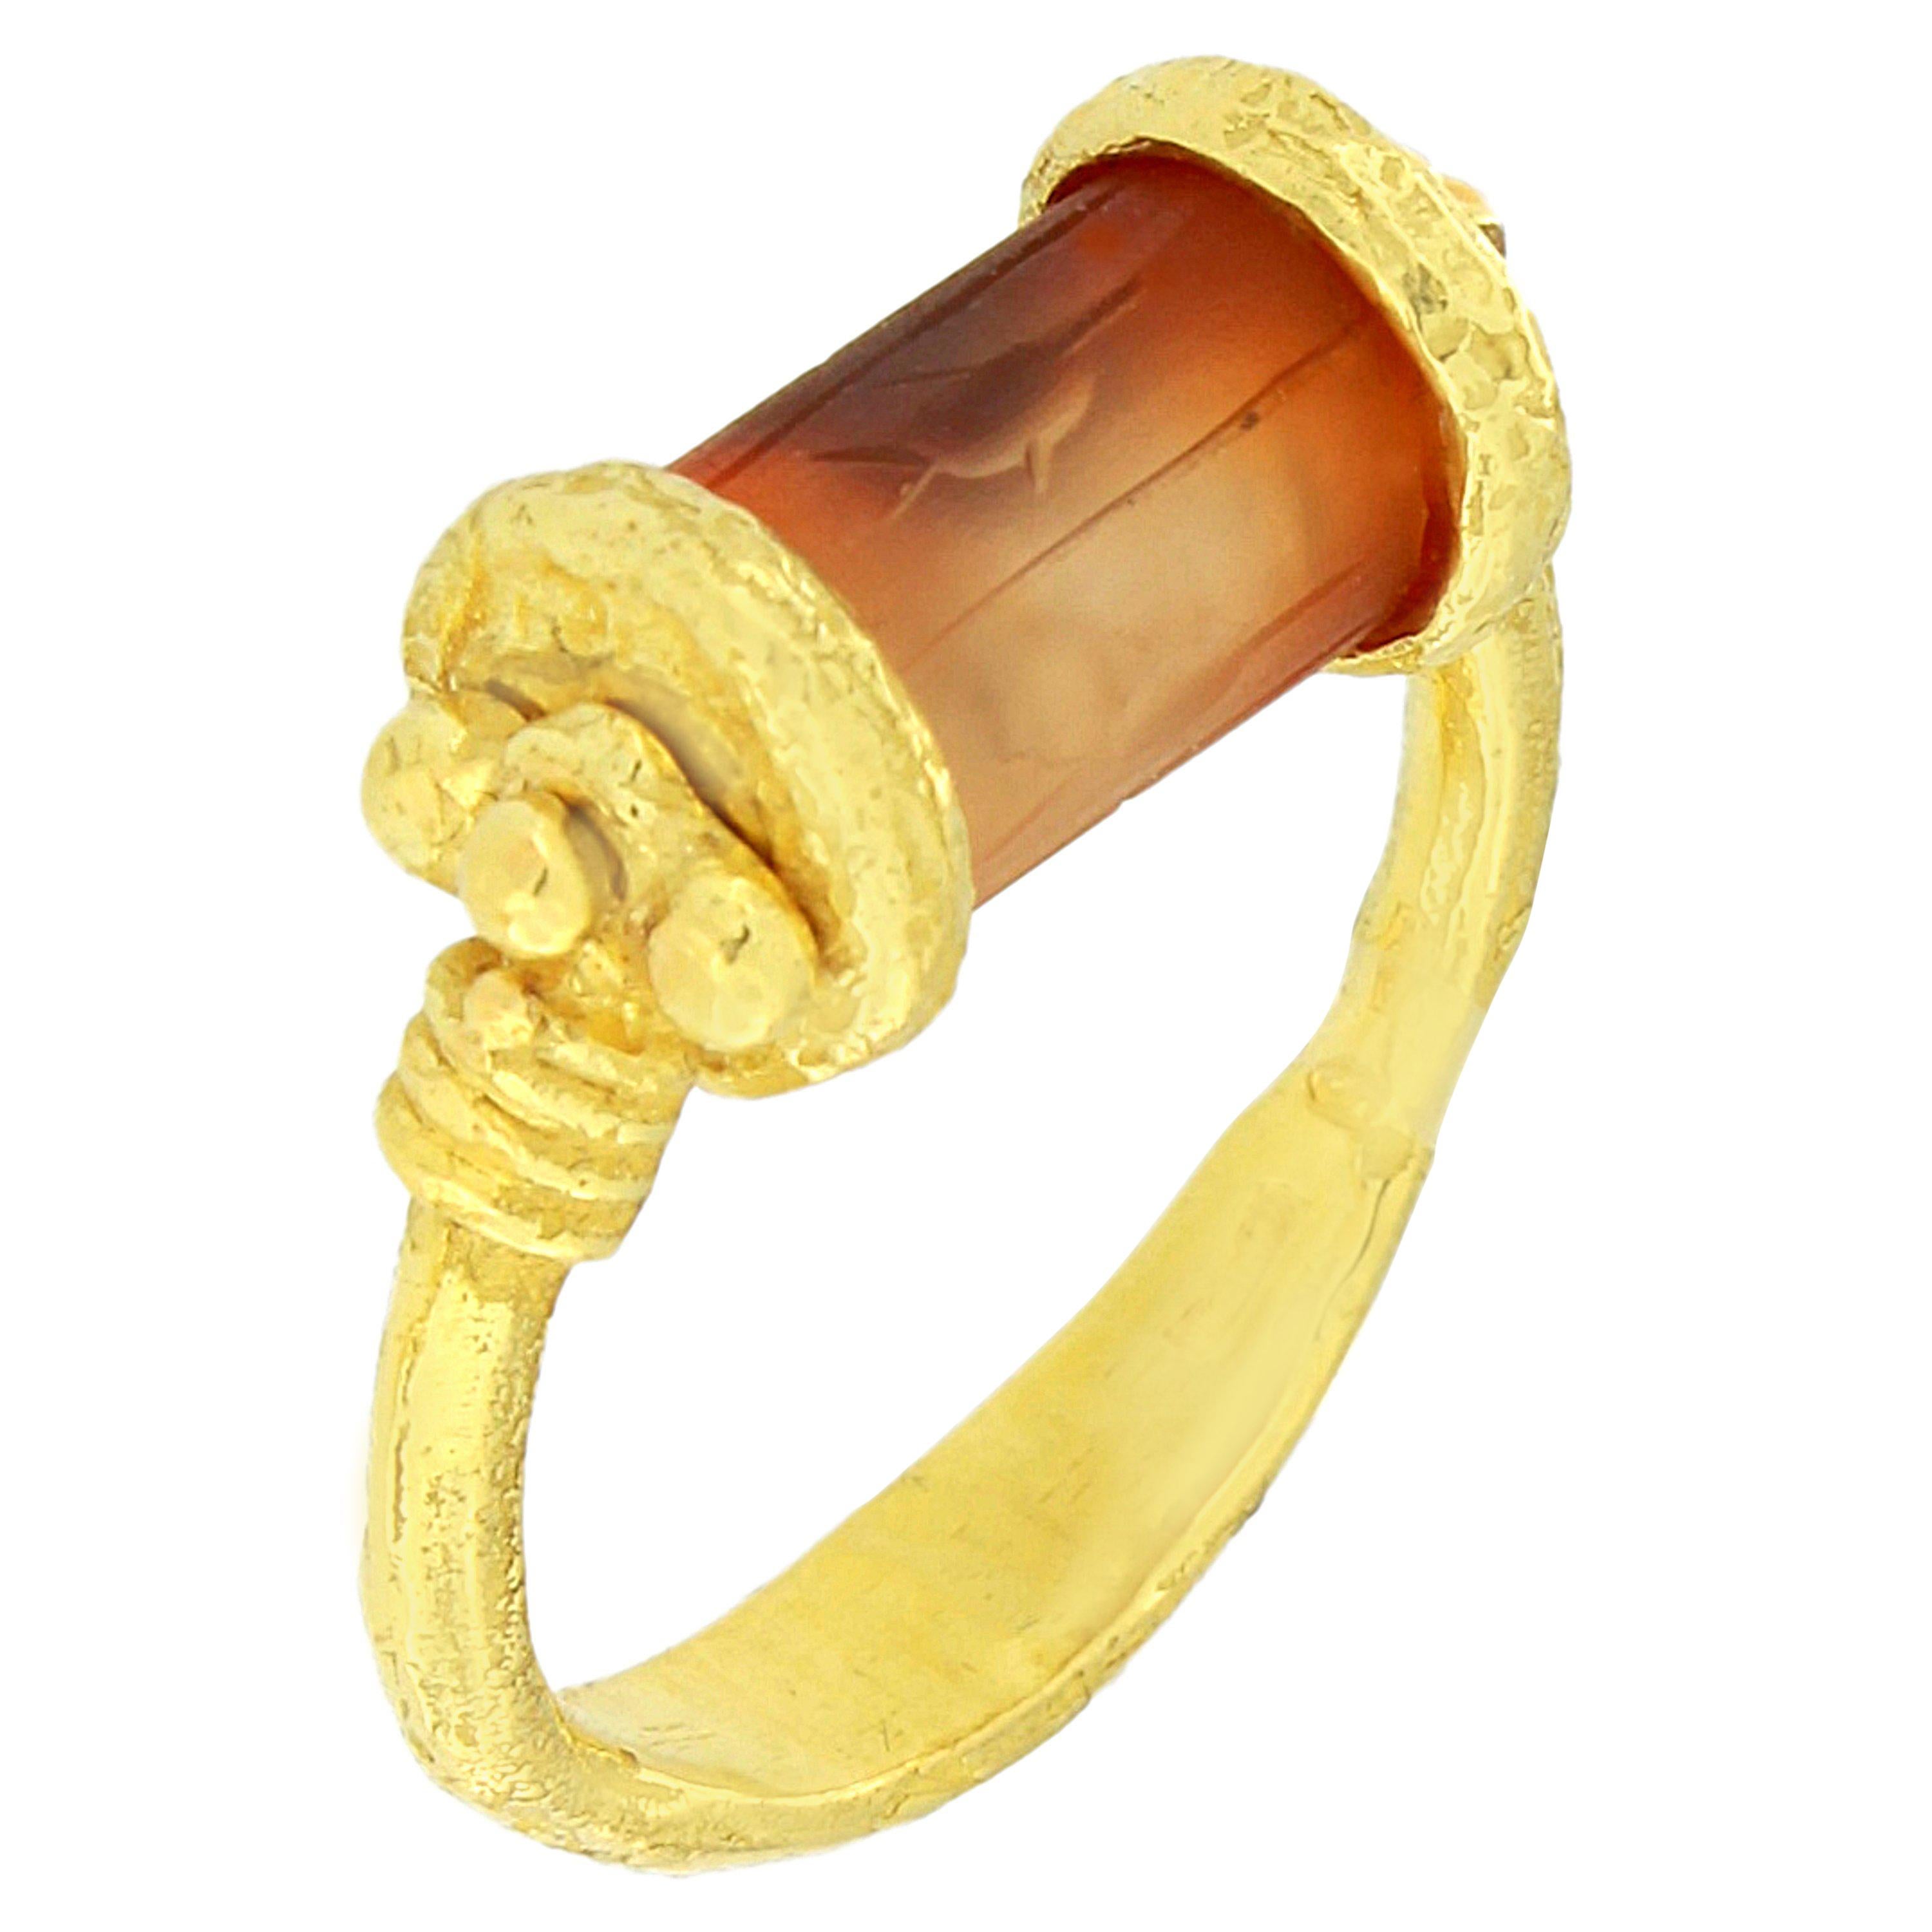 Sacchi gravierter Karneol Zylinder Siegelring aus 18 Karat Satin Gelbgold im Angebot